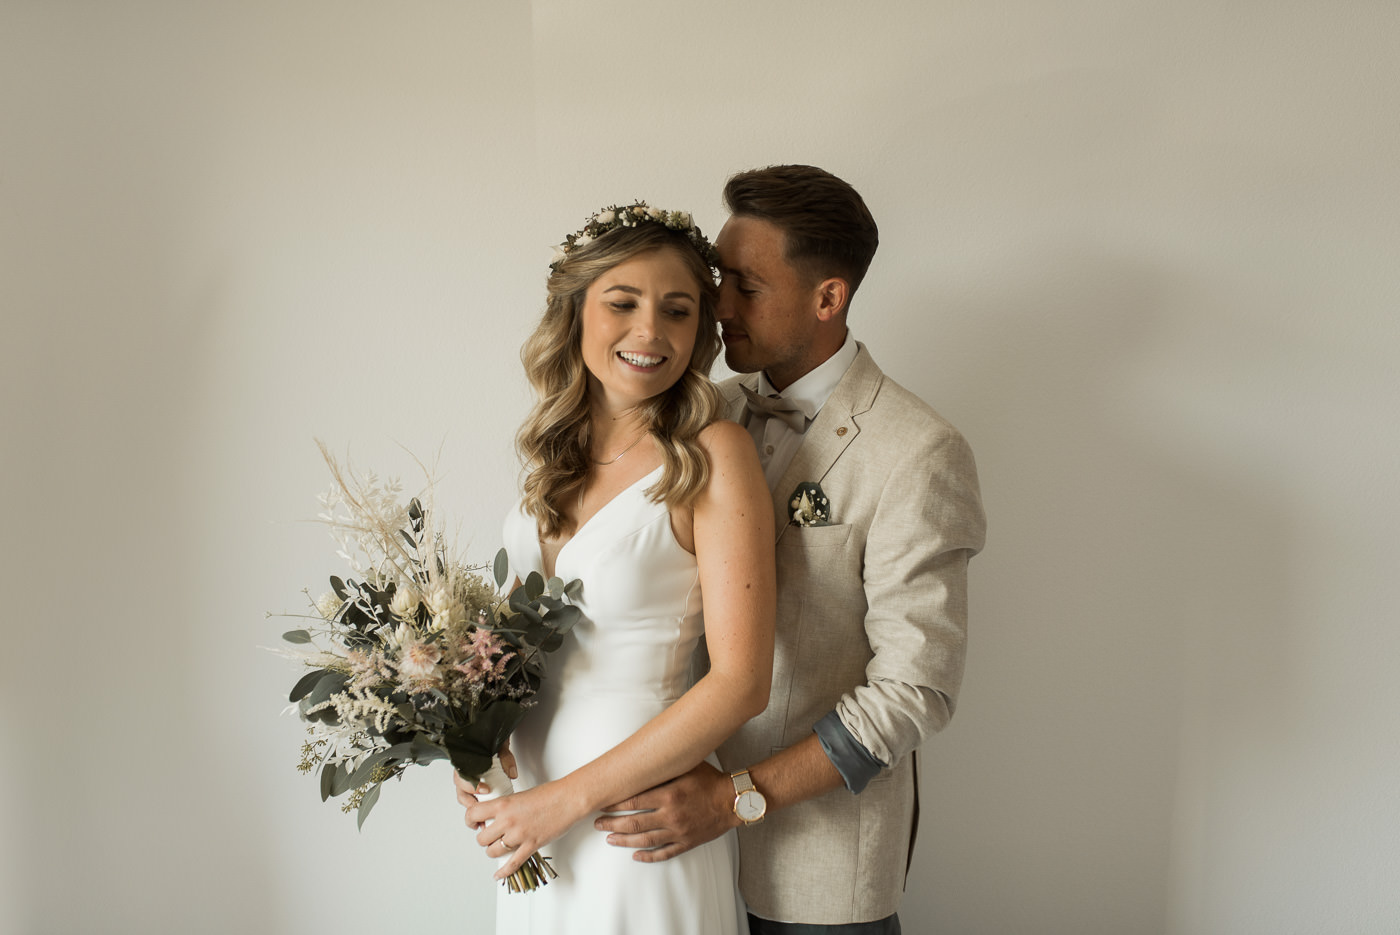 Brautpaar wegen Corona Hochzeit im Garten geplant und mit italienischem Sommer Flair geheiratet